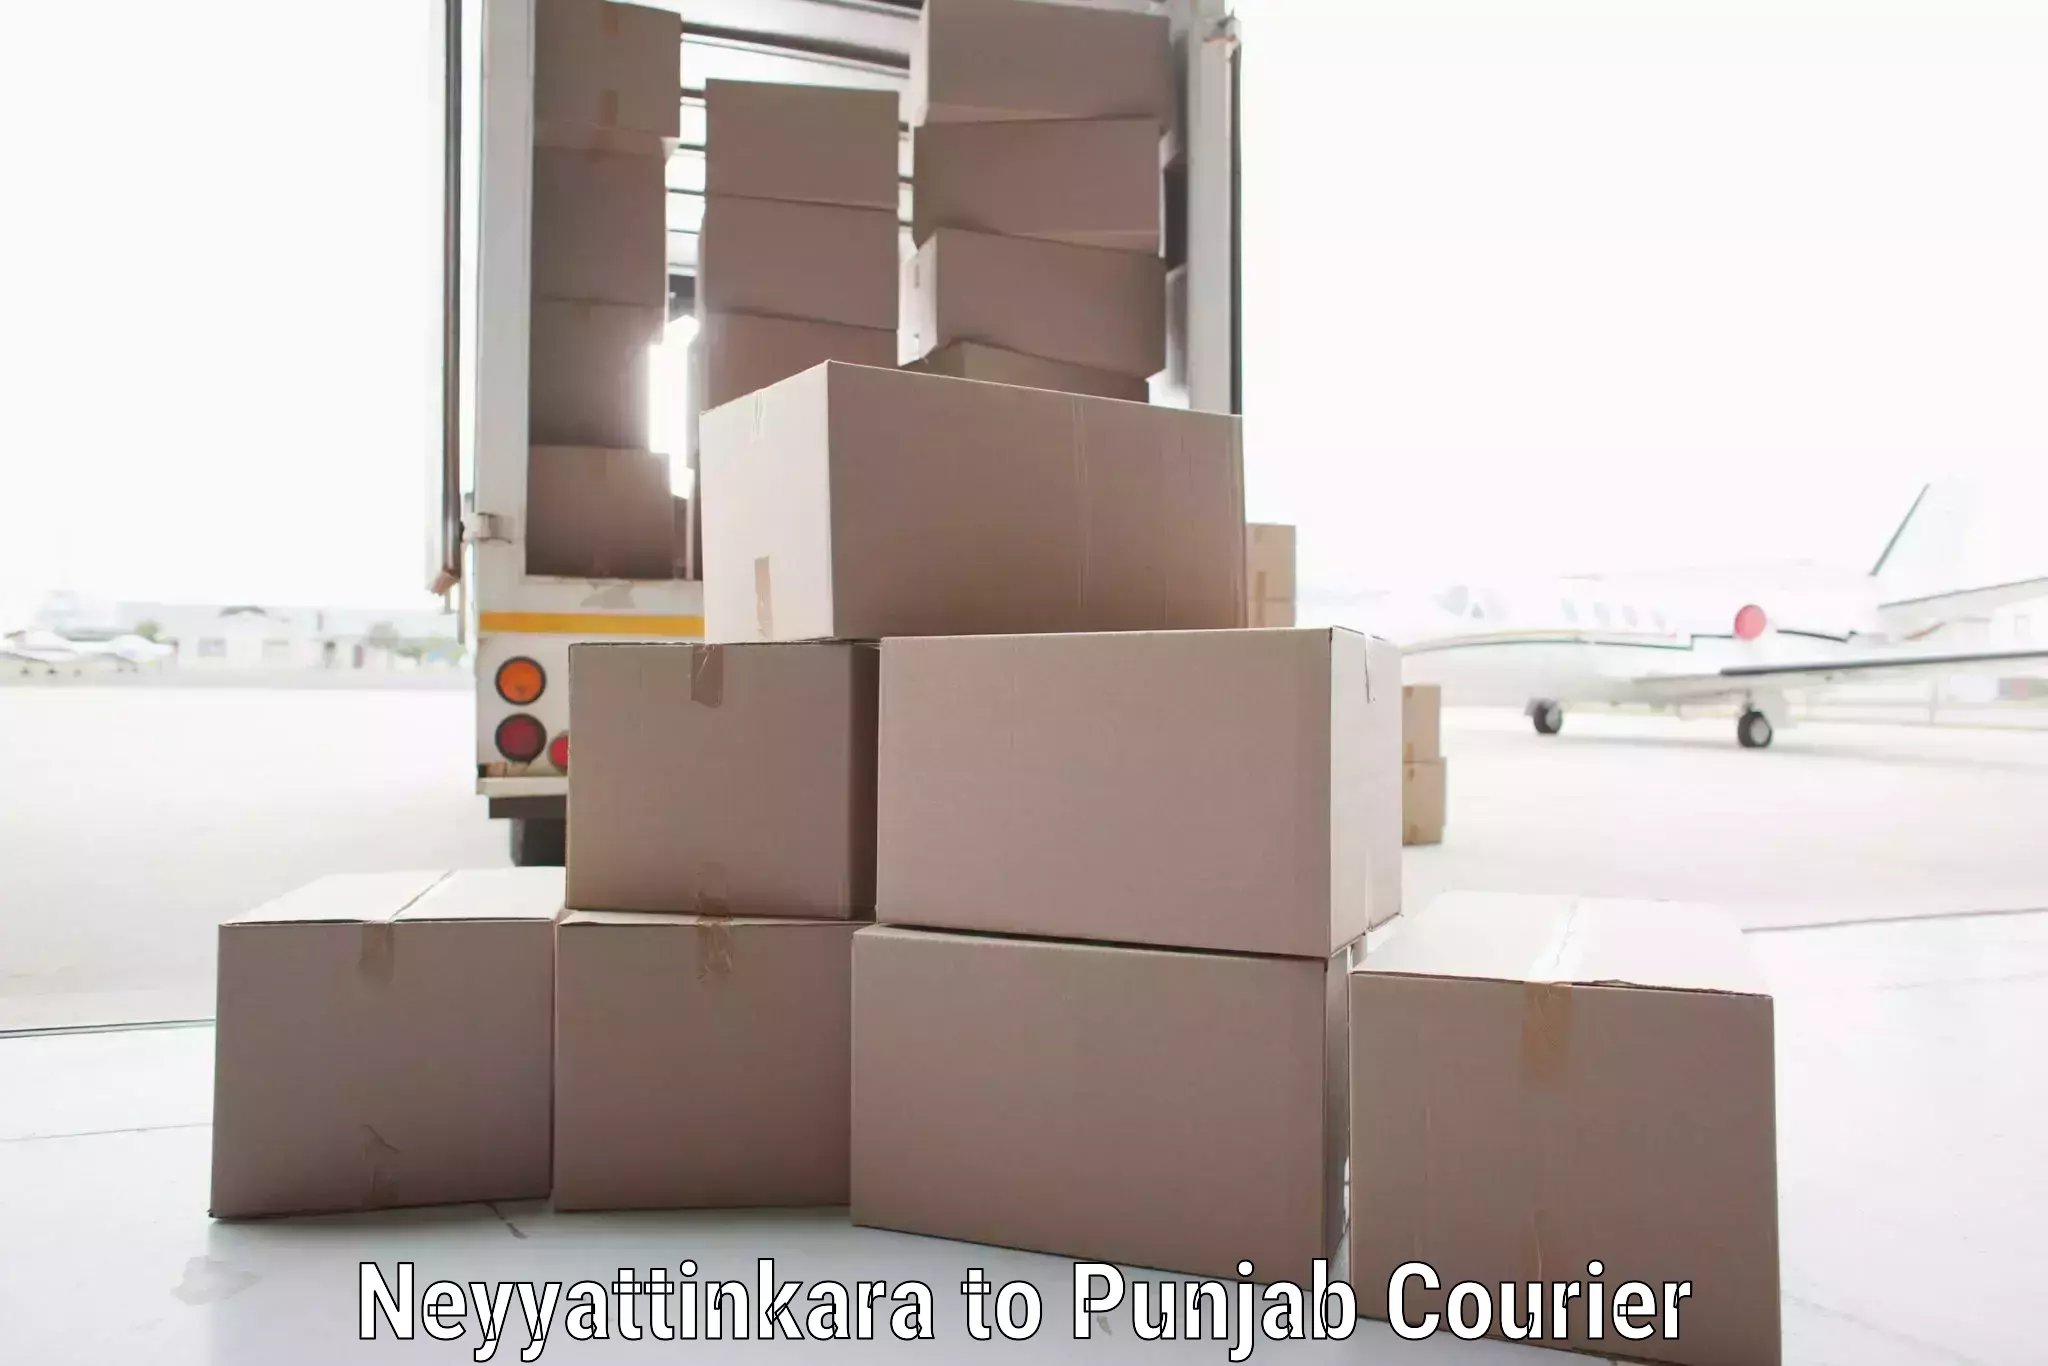 Sustainable shipping practices Neyyattinkara to Punjab